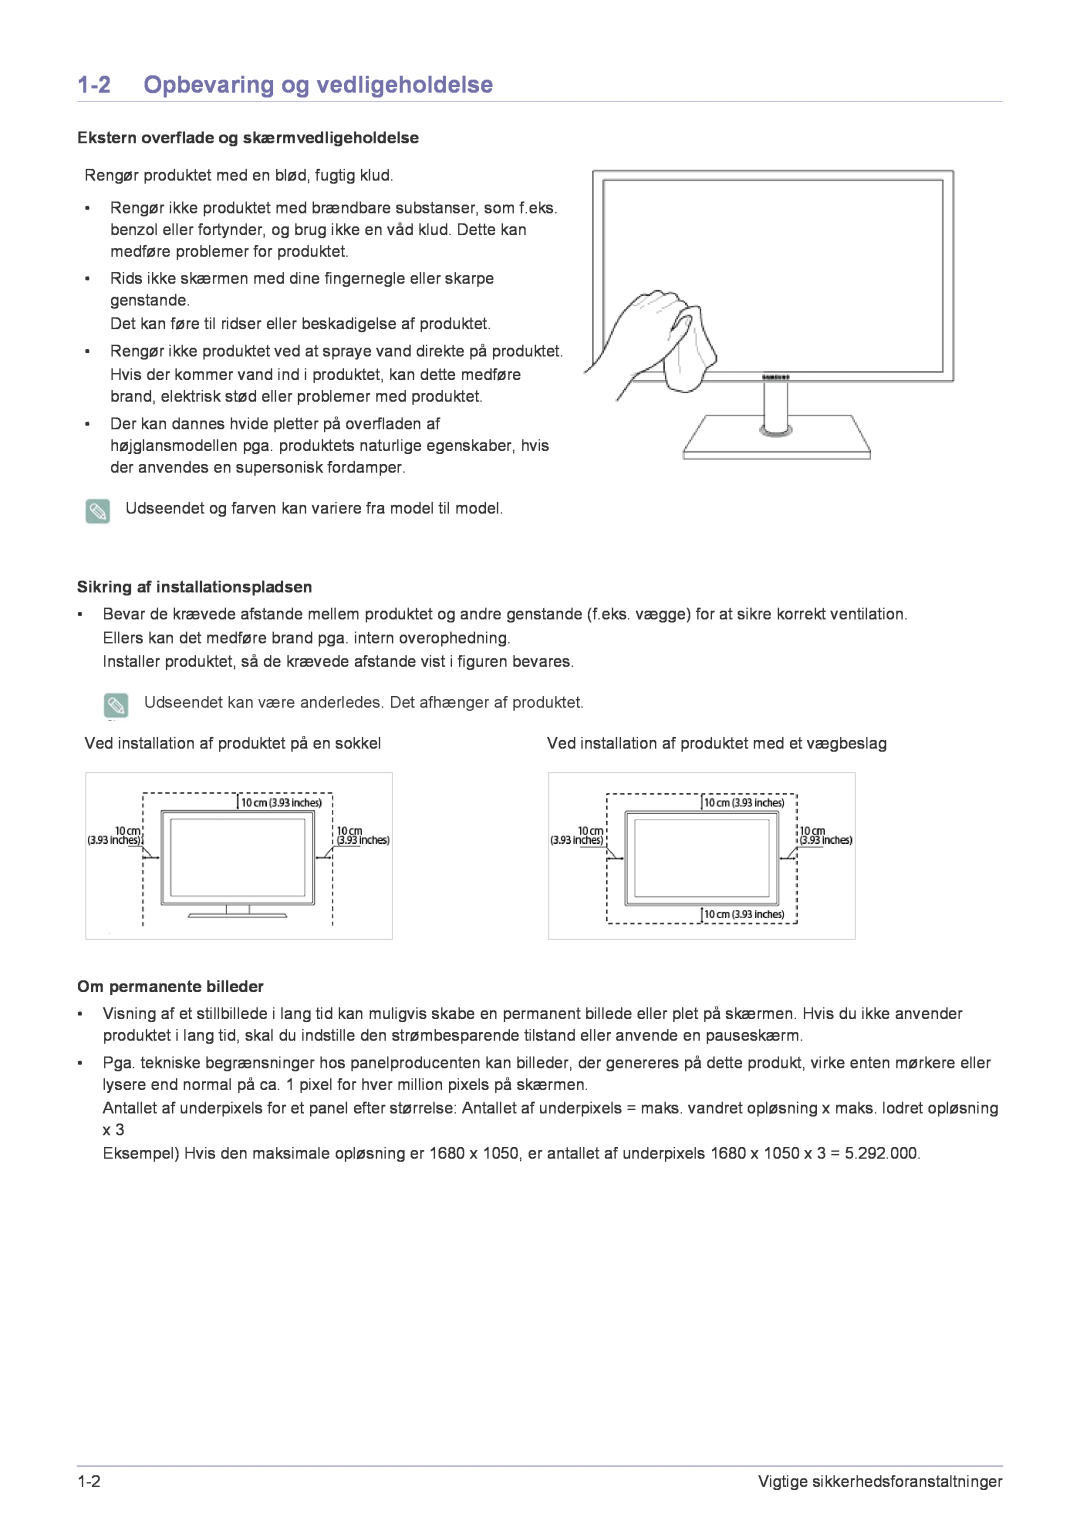 Samsung LF22NPBHBNP/EN Opbevaring og vedligeholdelse, Ekstern overflade og skærmvedligeholdelse, Om permanente billeder 